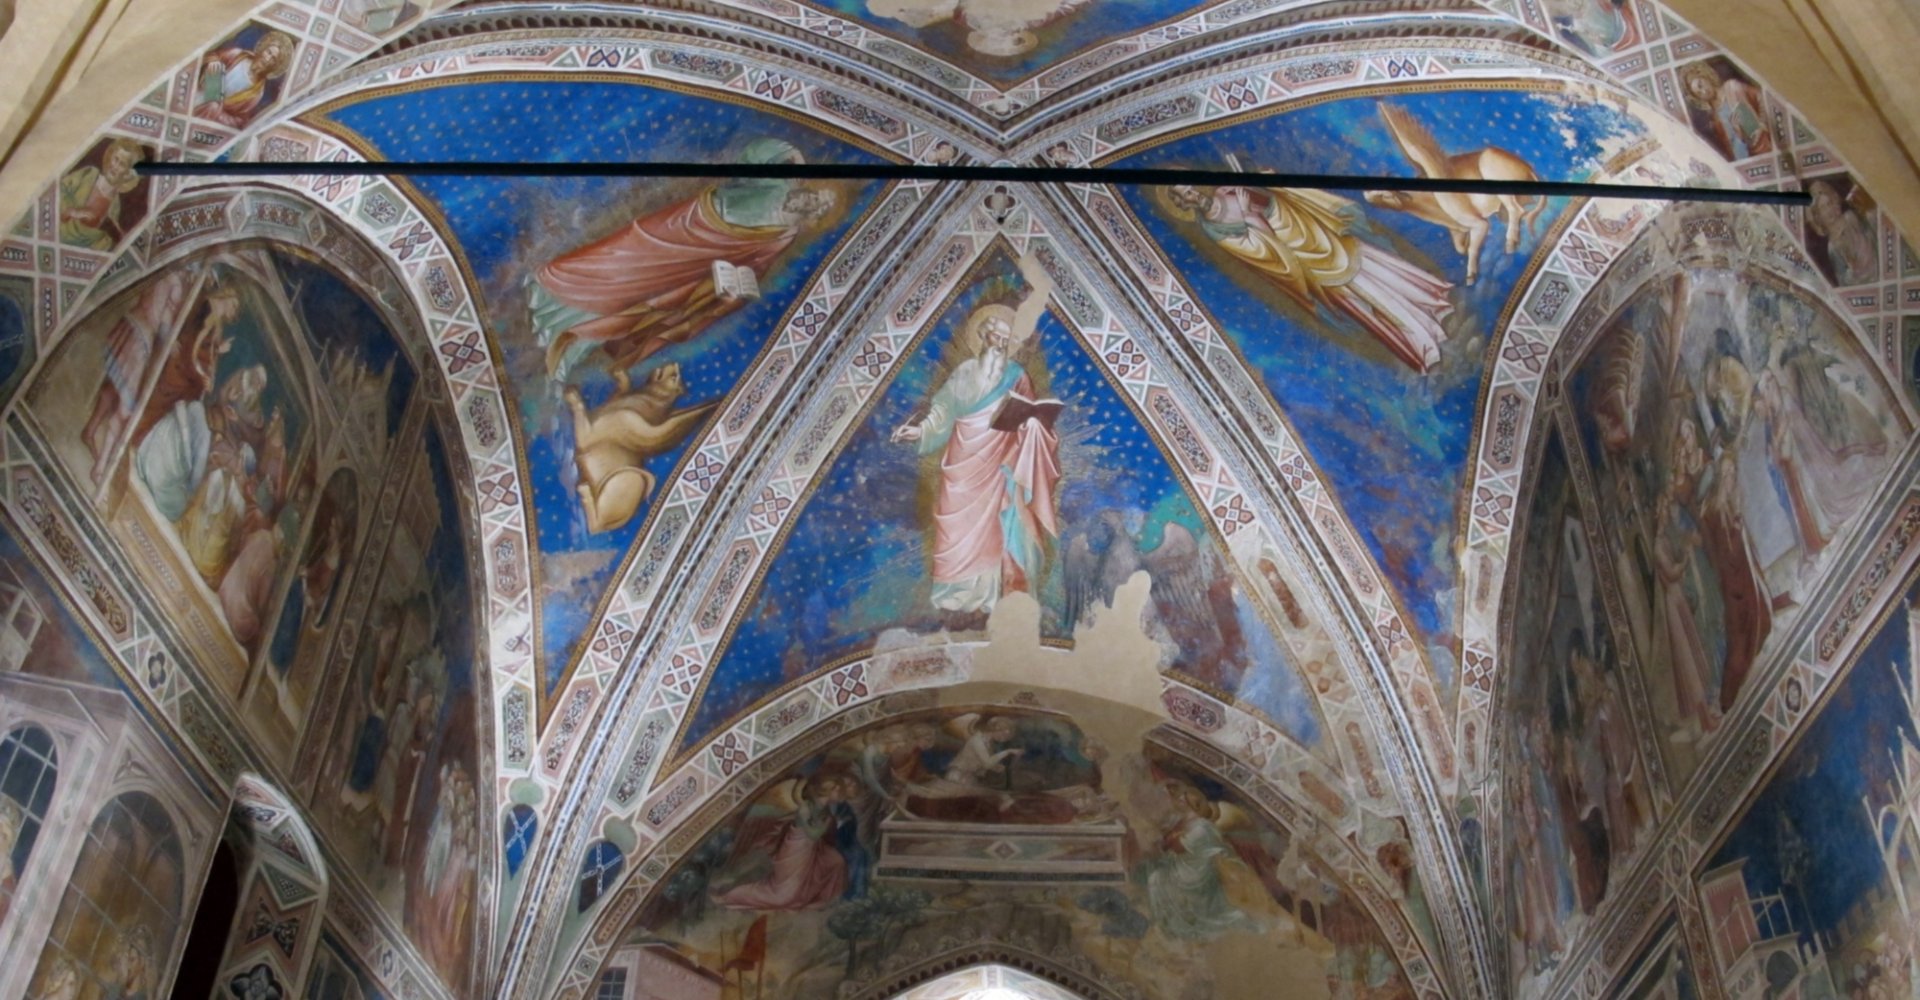 A glimpse of the interior of the Santa Caterina delle Ruote Oratory